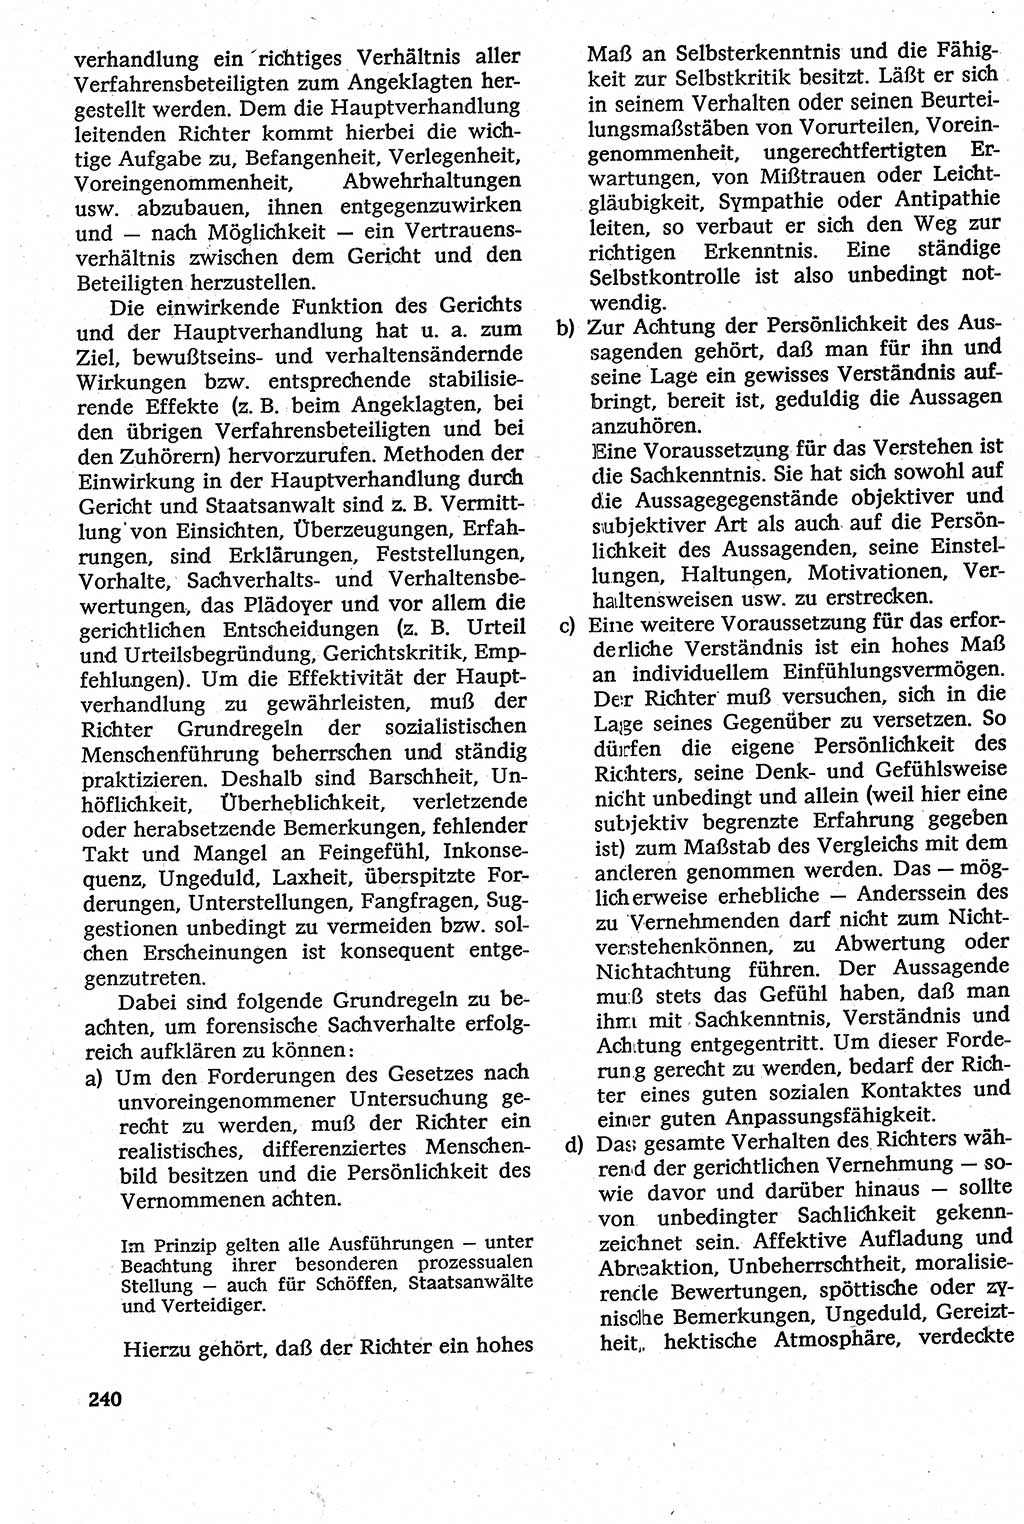 Strafverfahrensrecht [Deutsche Demokratische Republik (DDR)], Lehrbuch 1982, Seite 240 (Strafverf.-R. DDR Lb. 1982, S. 240)